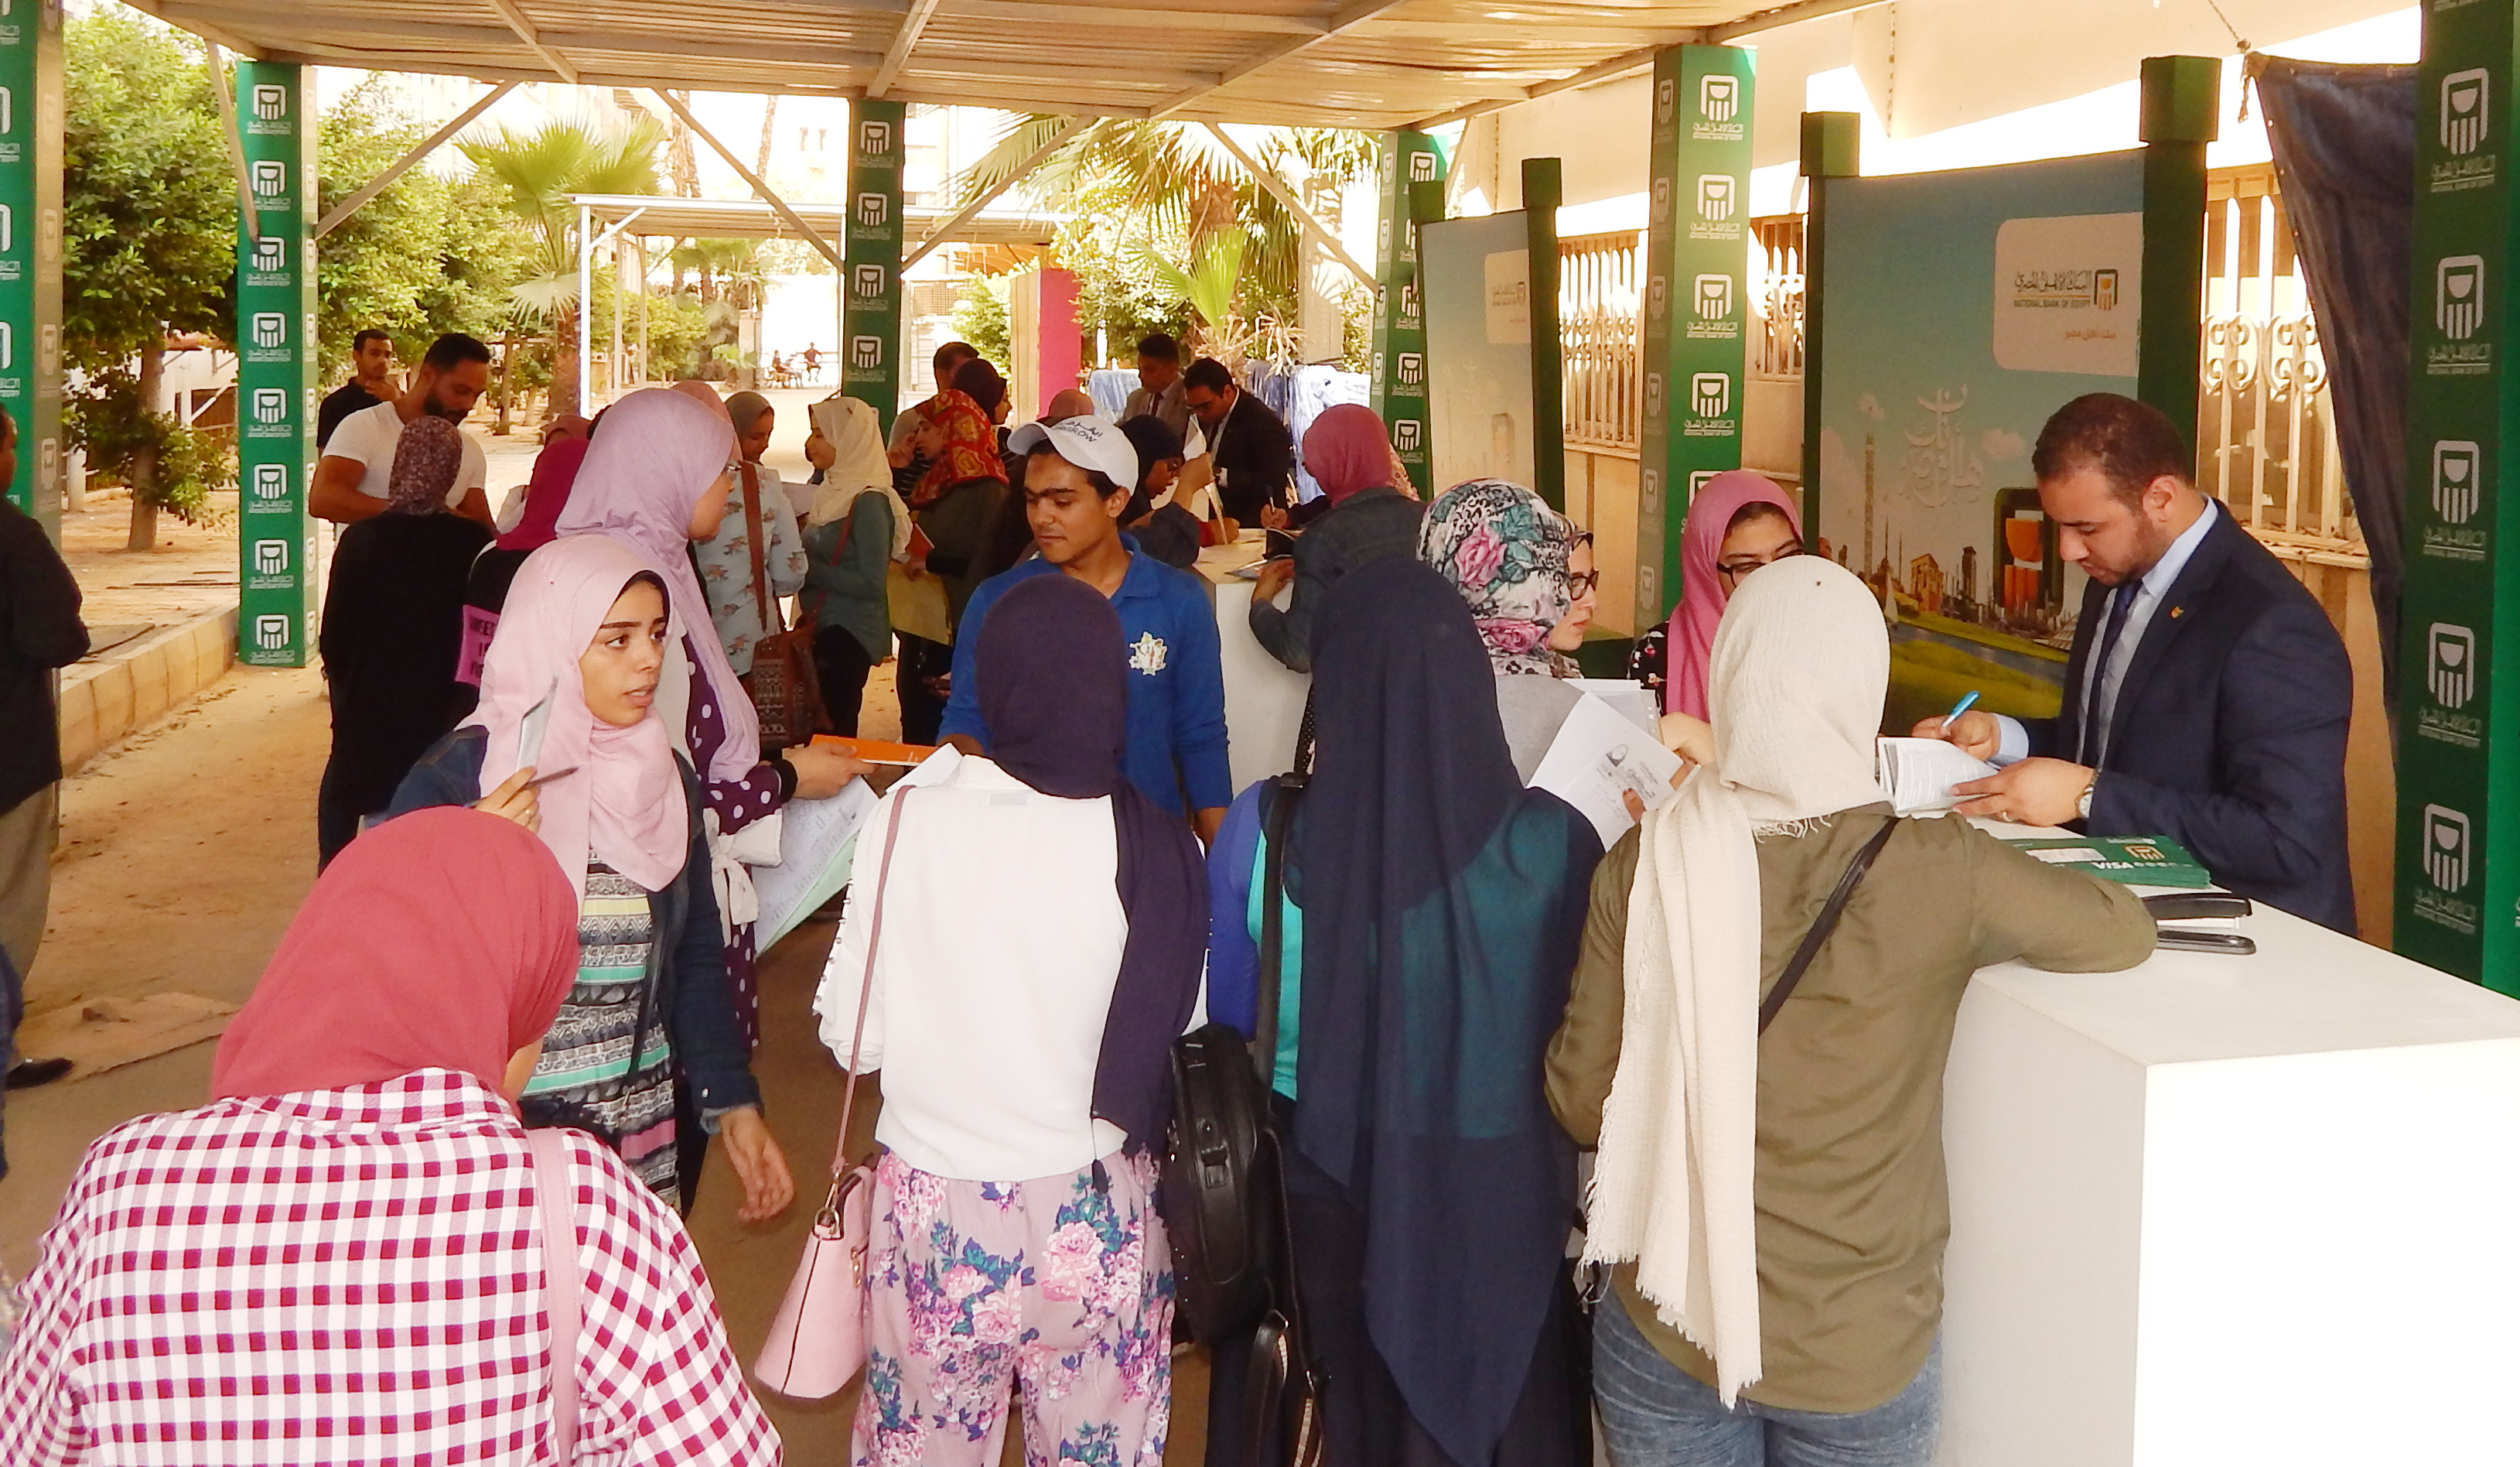 الكشف الطبى للطلبة والطالبات الجدد بكلية الزراعة جامعة القاهرة يوم الأربعاء 5/9/2018  بمستشفى الطلبة